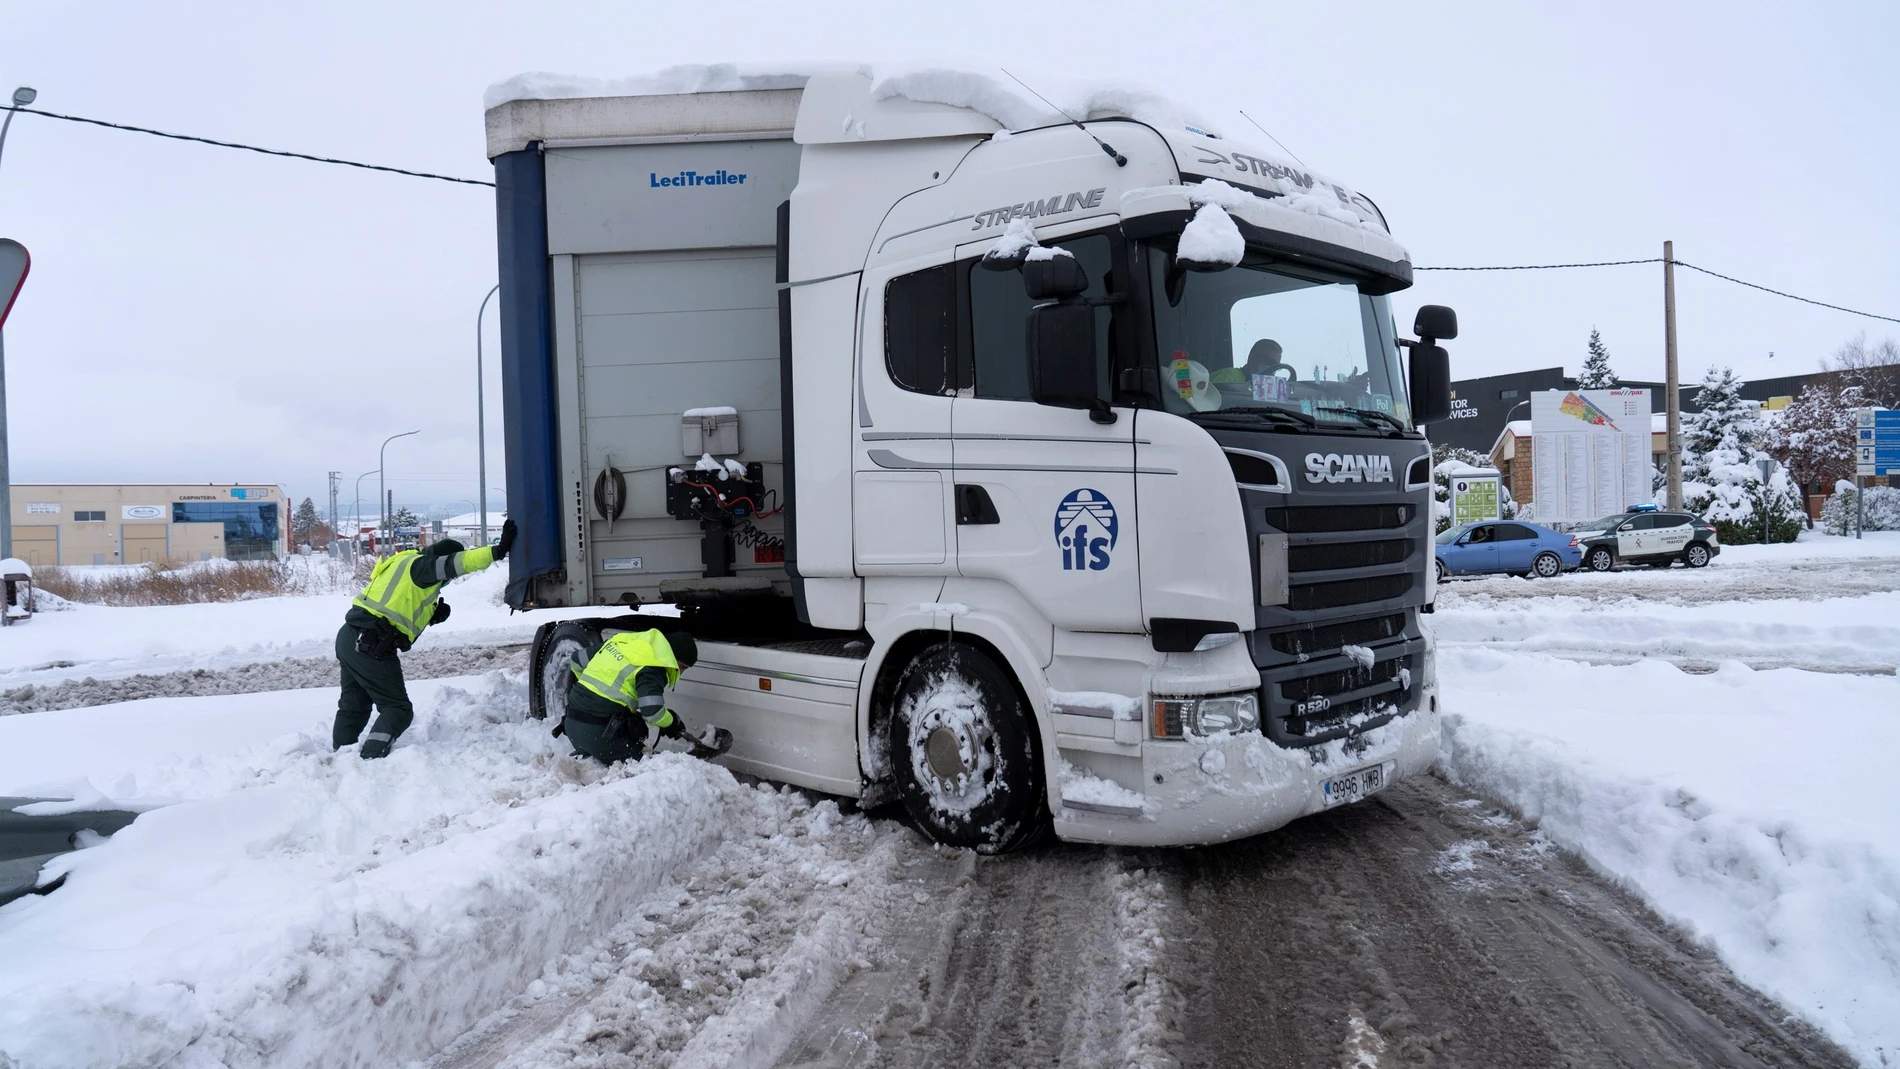 Un camión en dificultades por la nieve